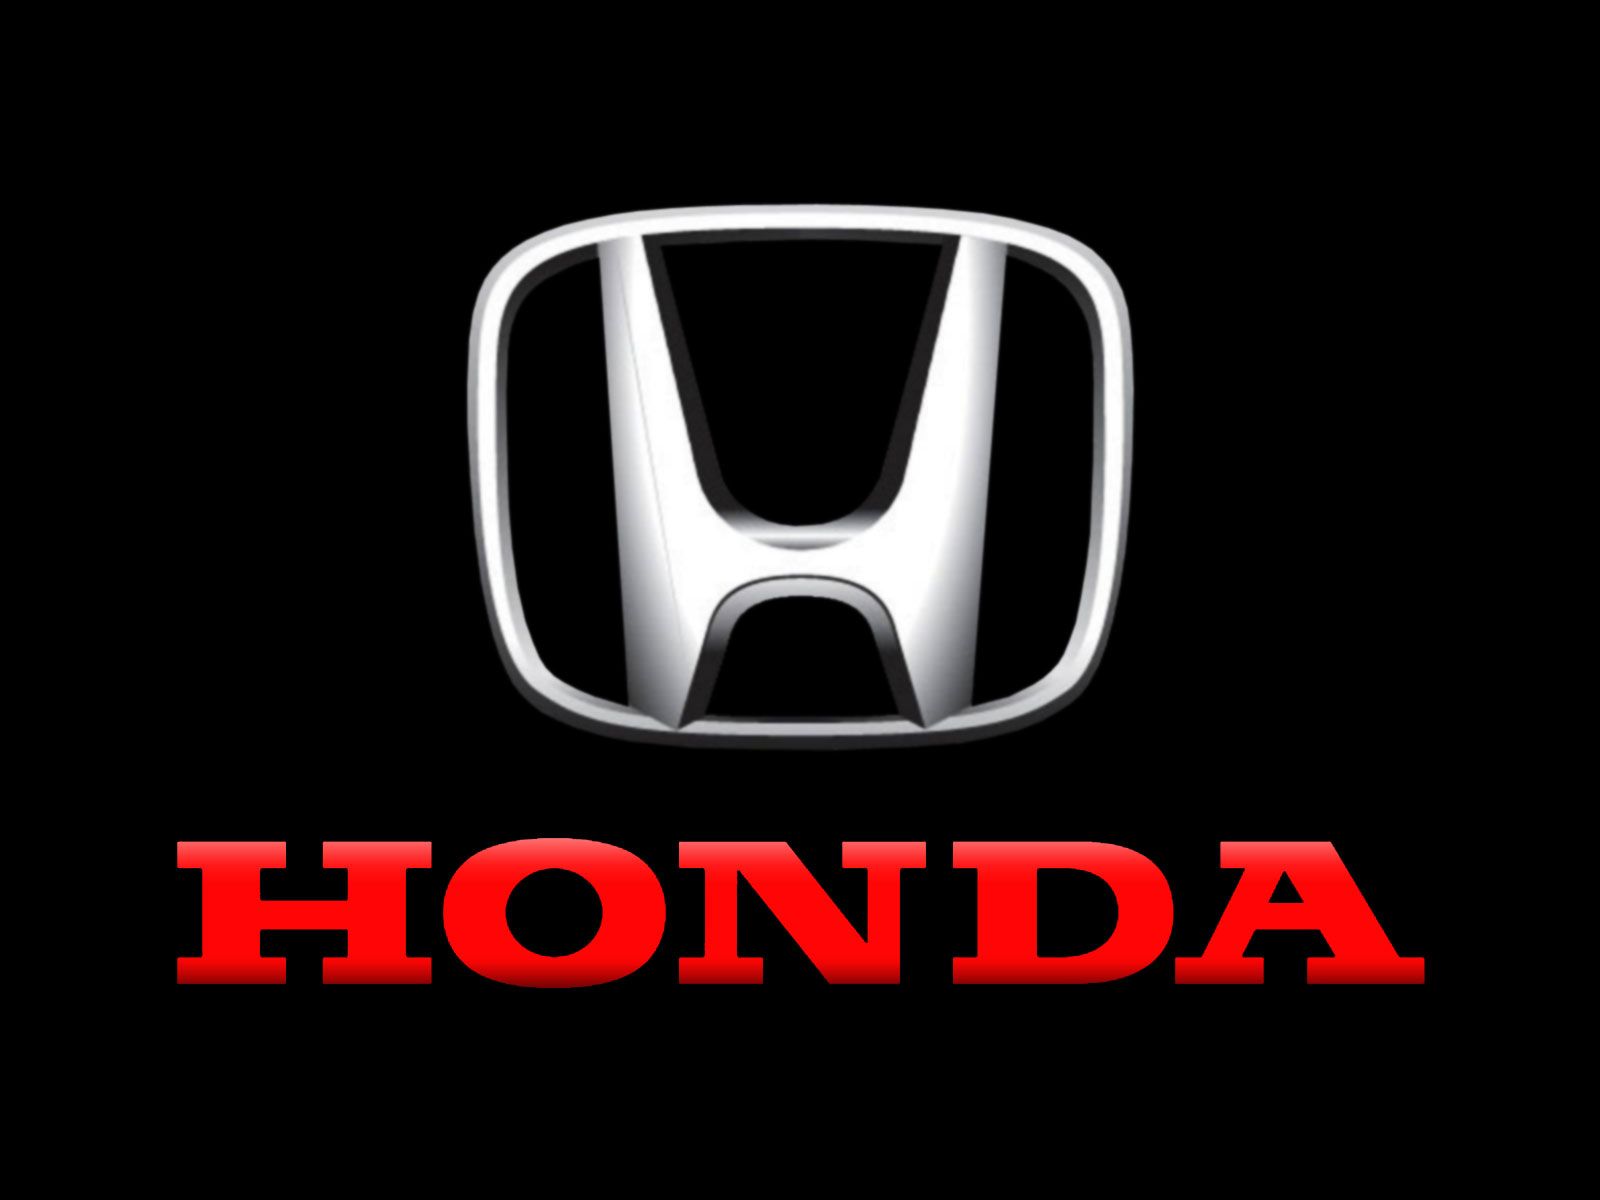 honda motorcycles logo wallpaper